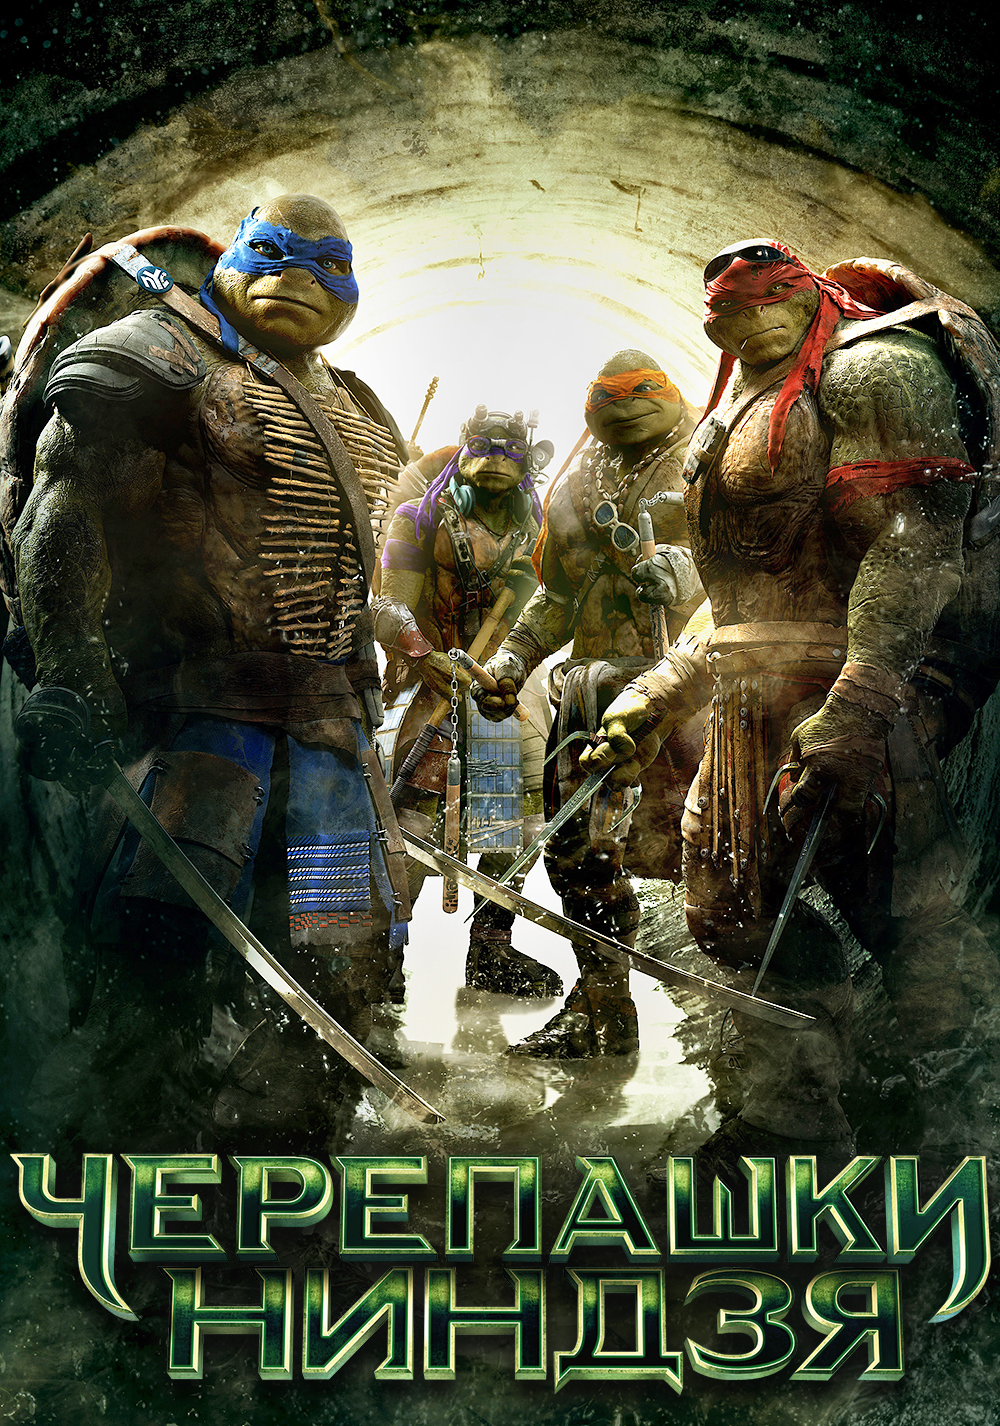 teenage mutant ninja turtles 2014 online free